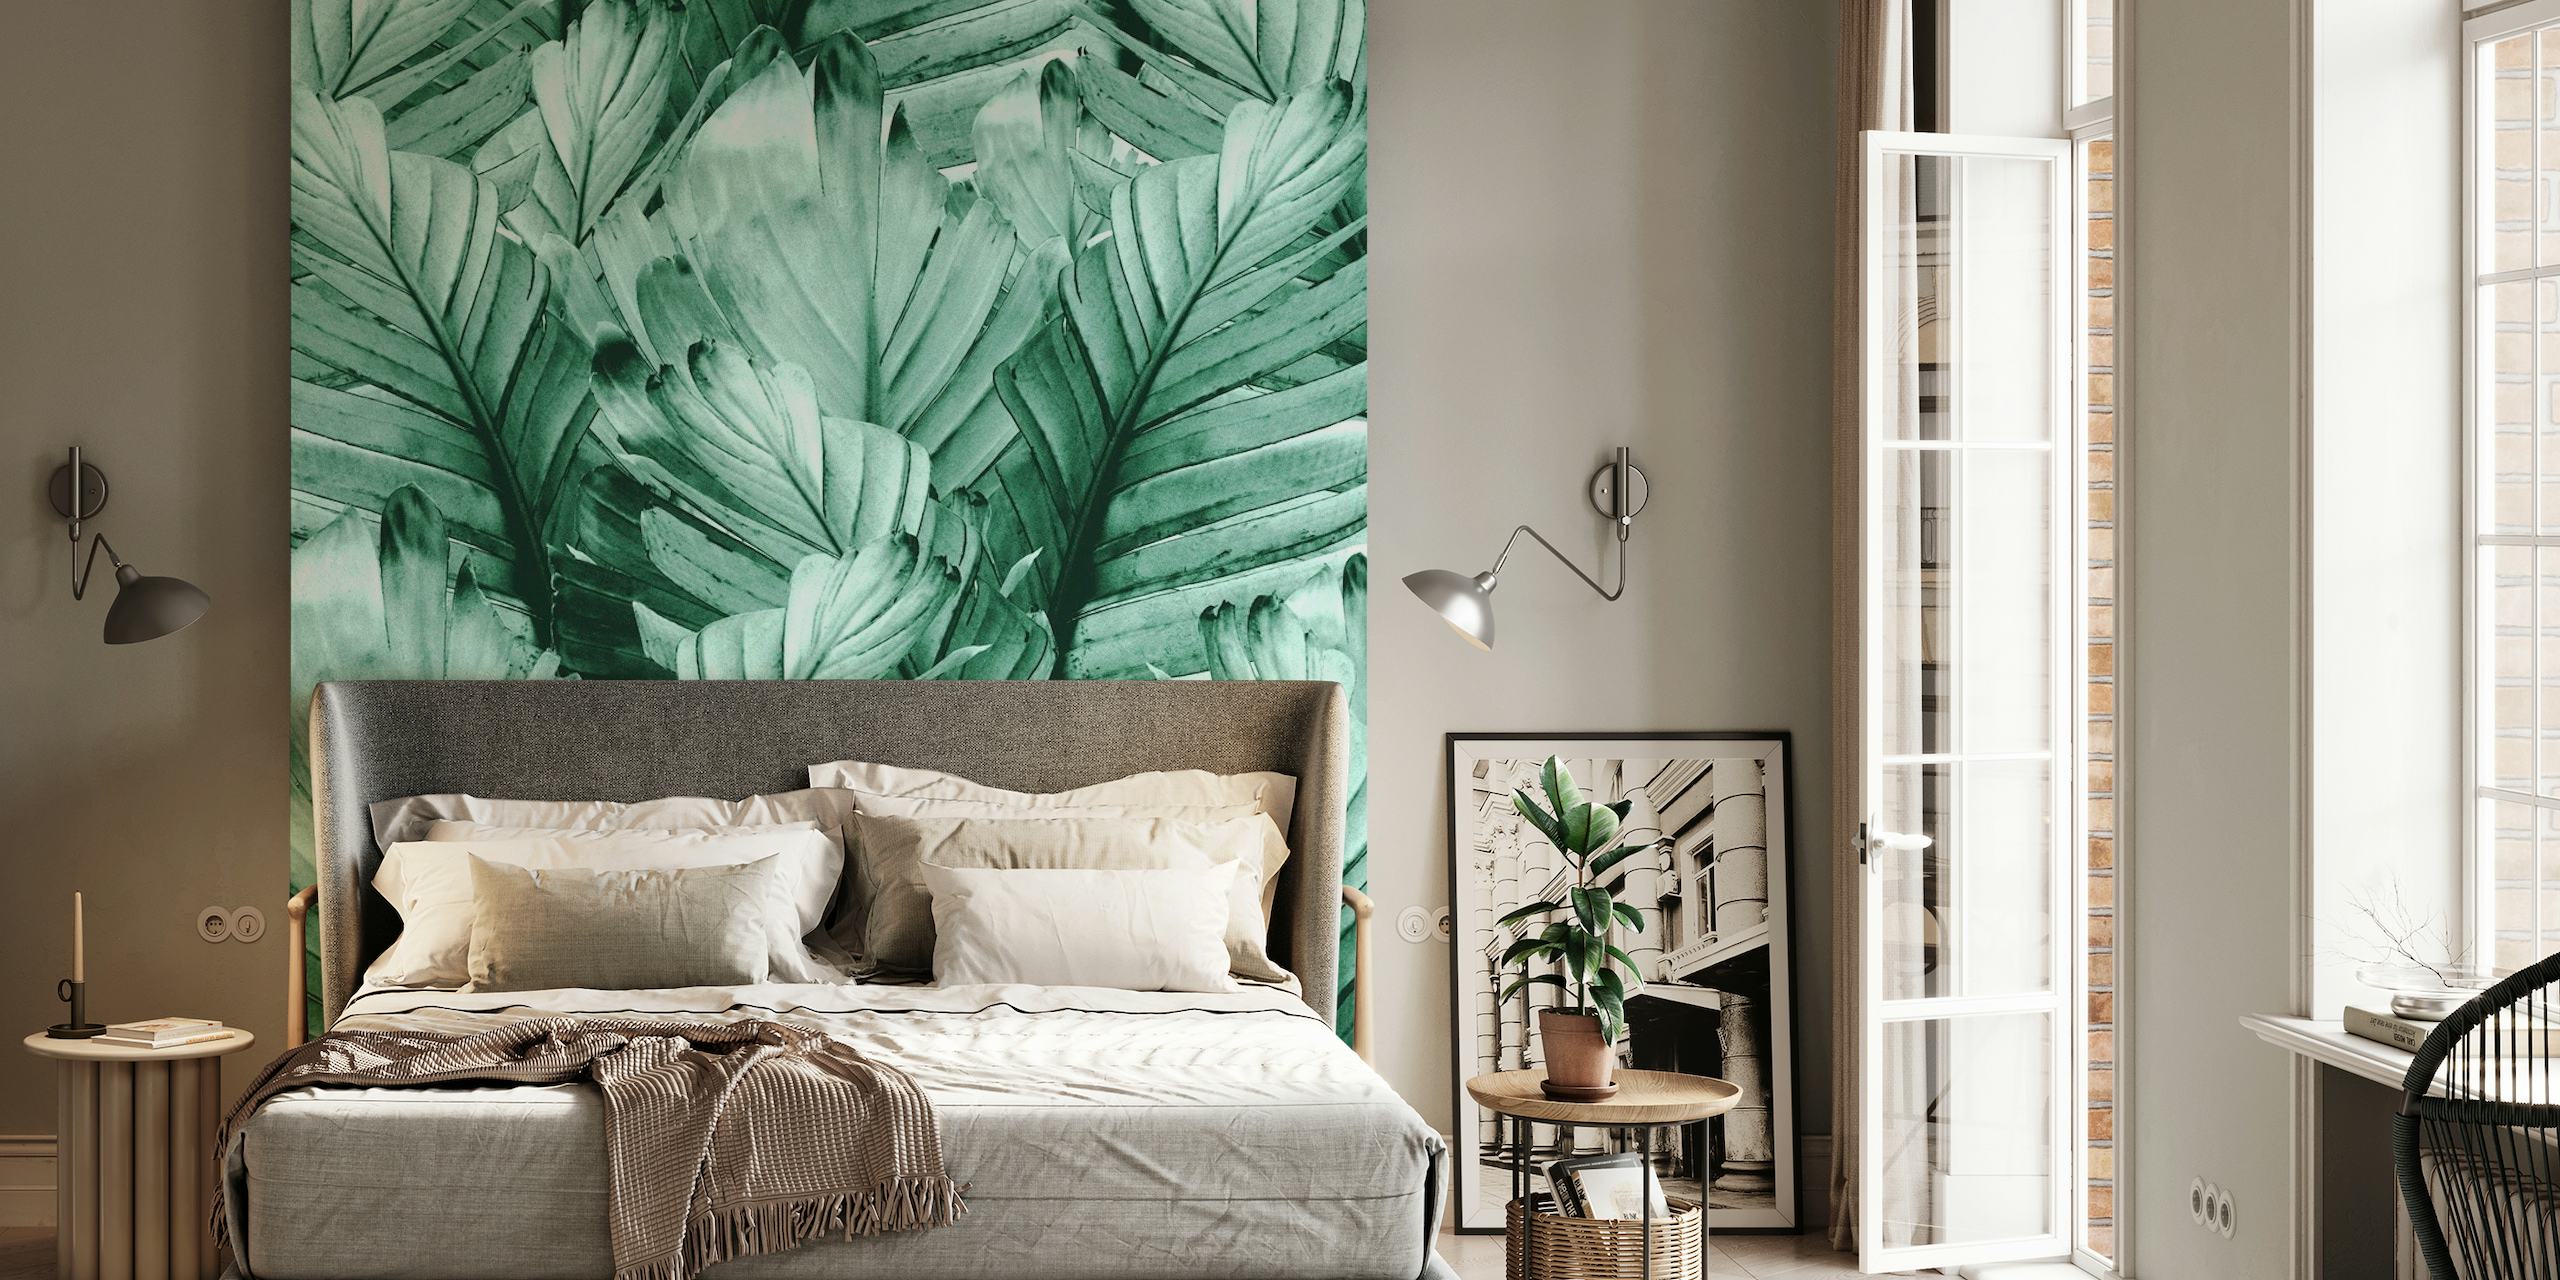 Fotomural vinílico de folhas de banana verde com texturas detalhadas em estilo tropical